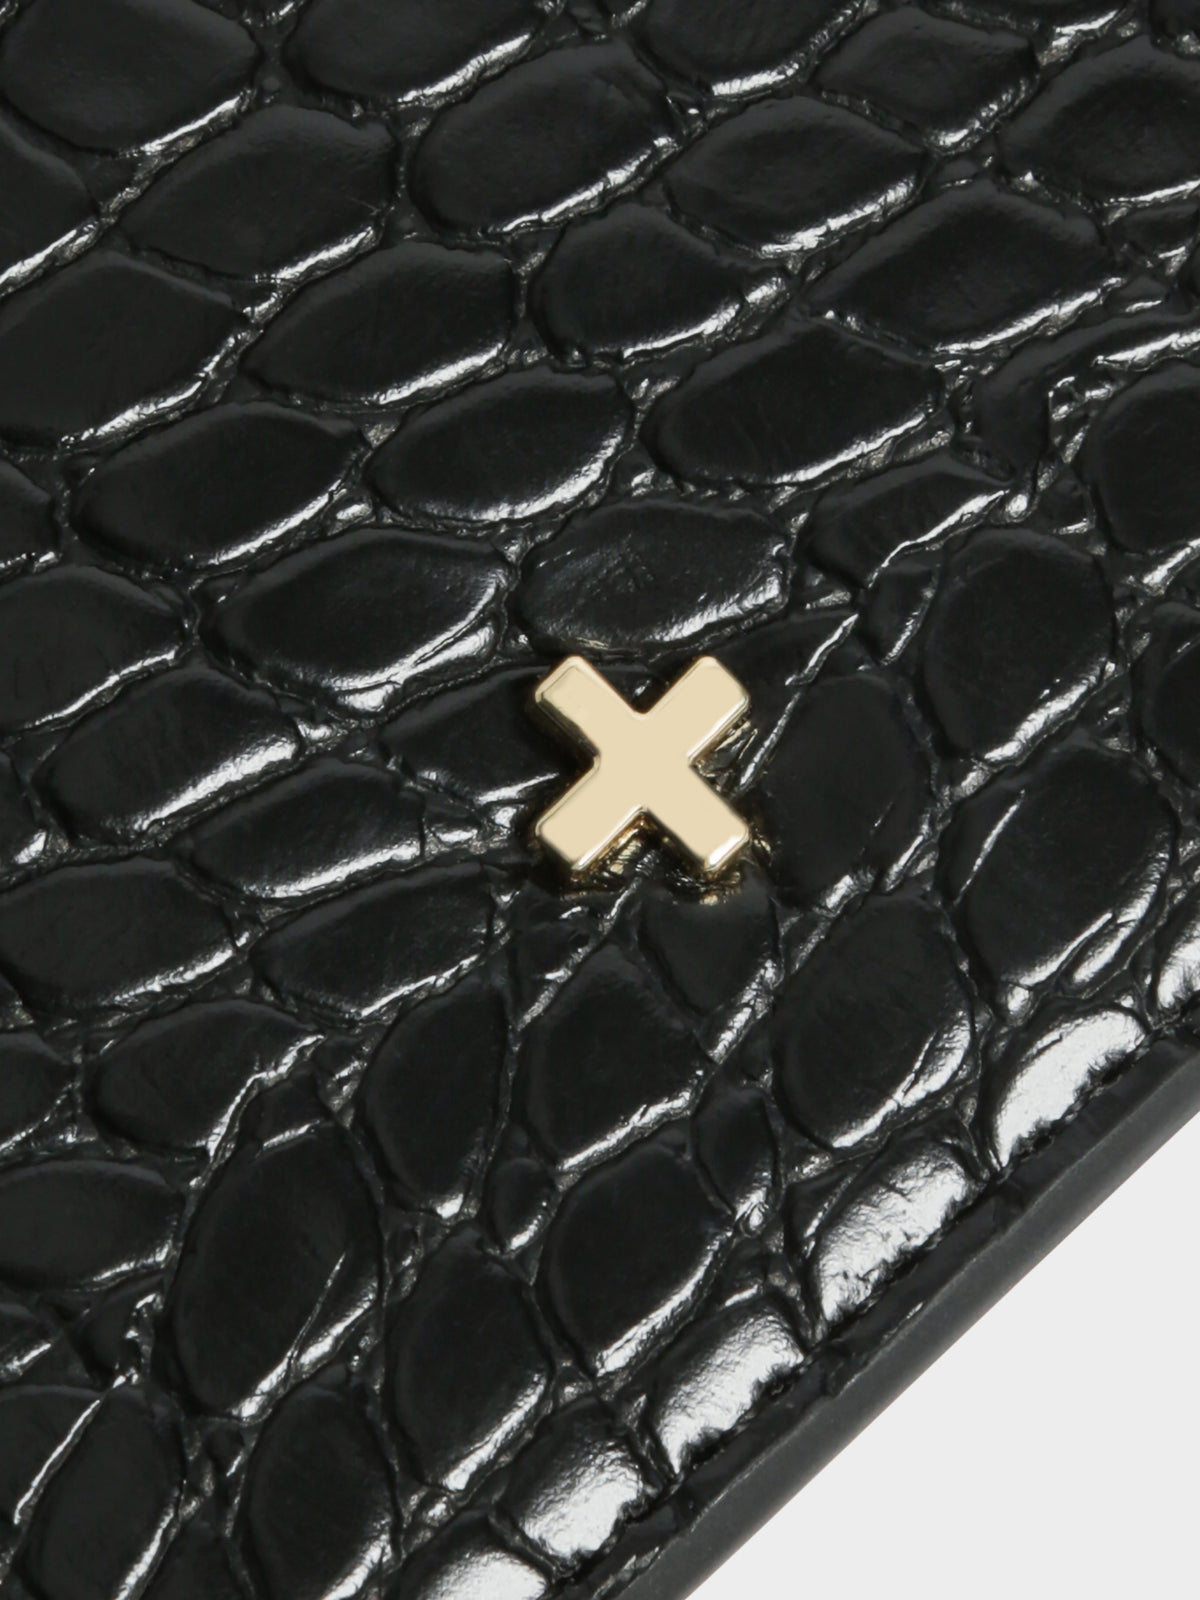 Marley Slim Wallet in Black Croc Skin